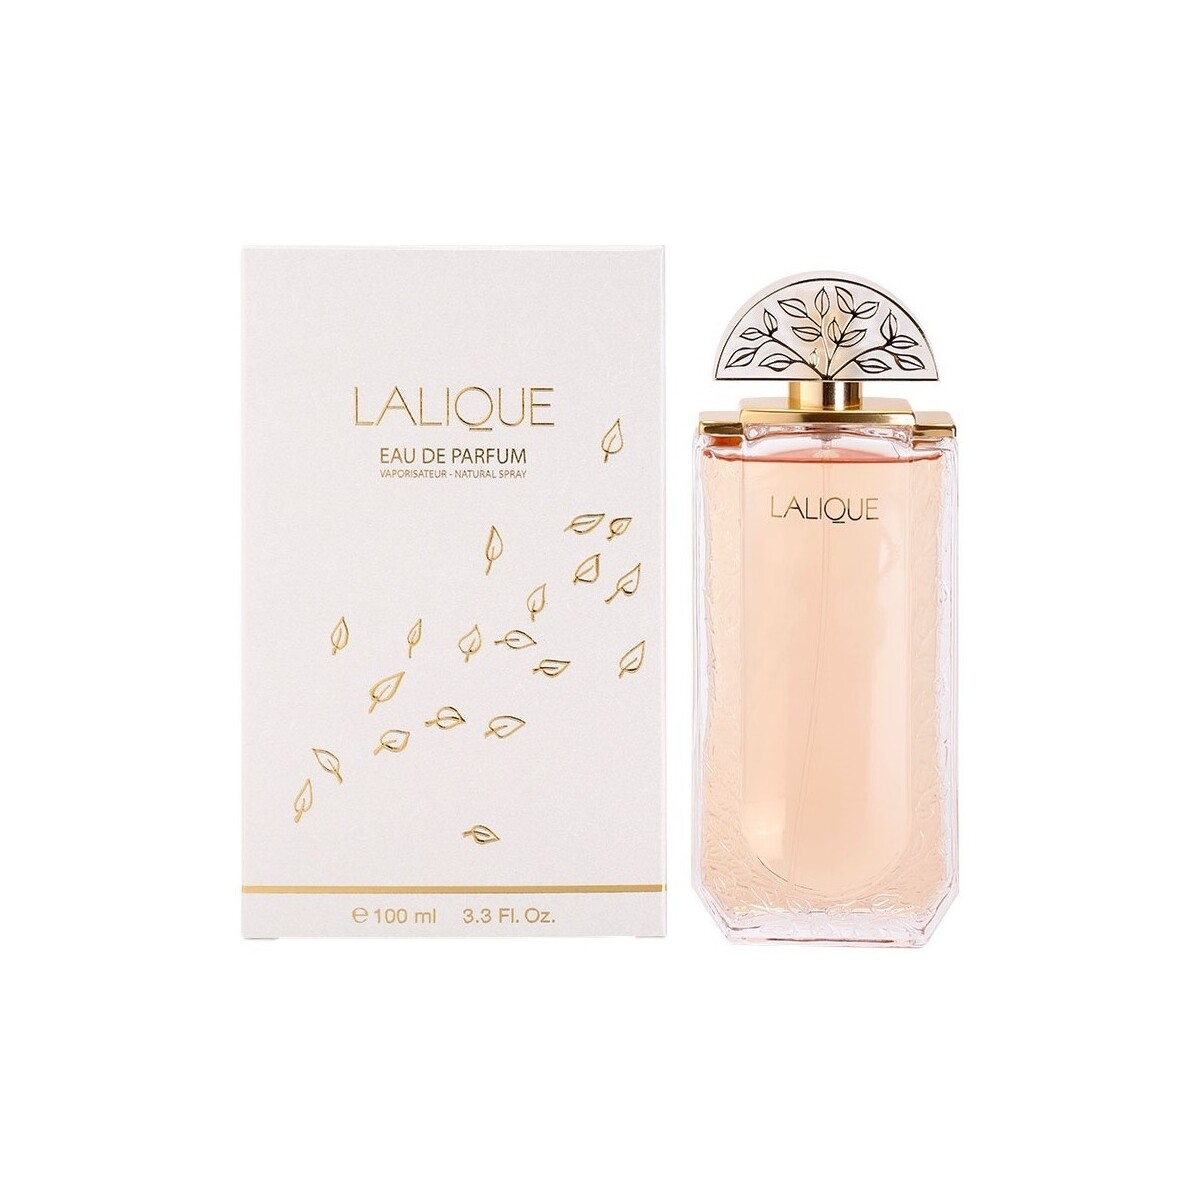 Belleza Mujer Perfume Lalique - Eau de Parfum - 100ml - Vaporizador Lalique - perfume - 100ml - spray